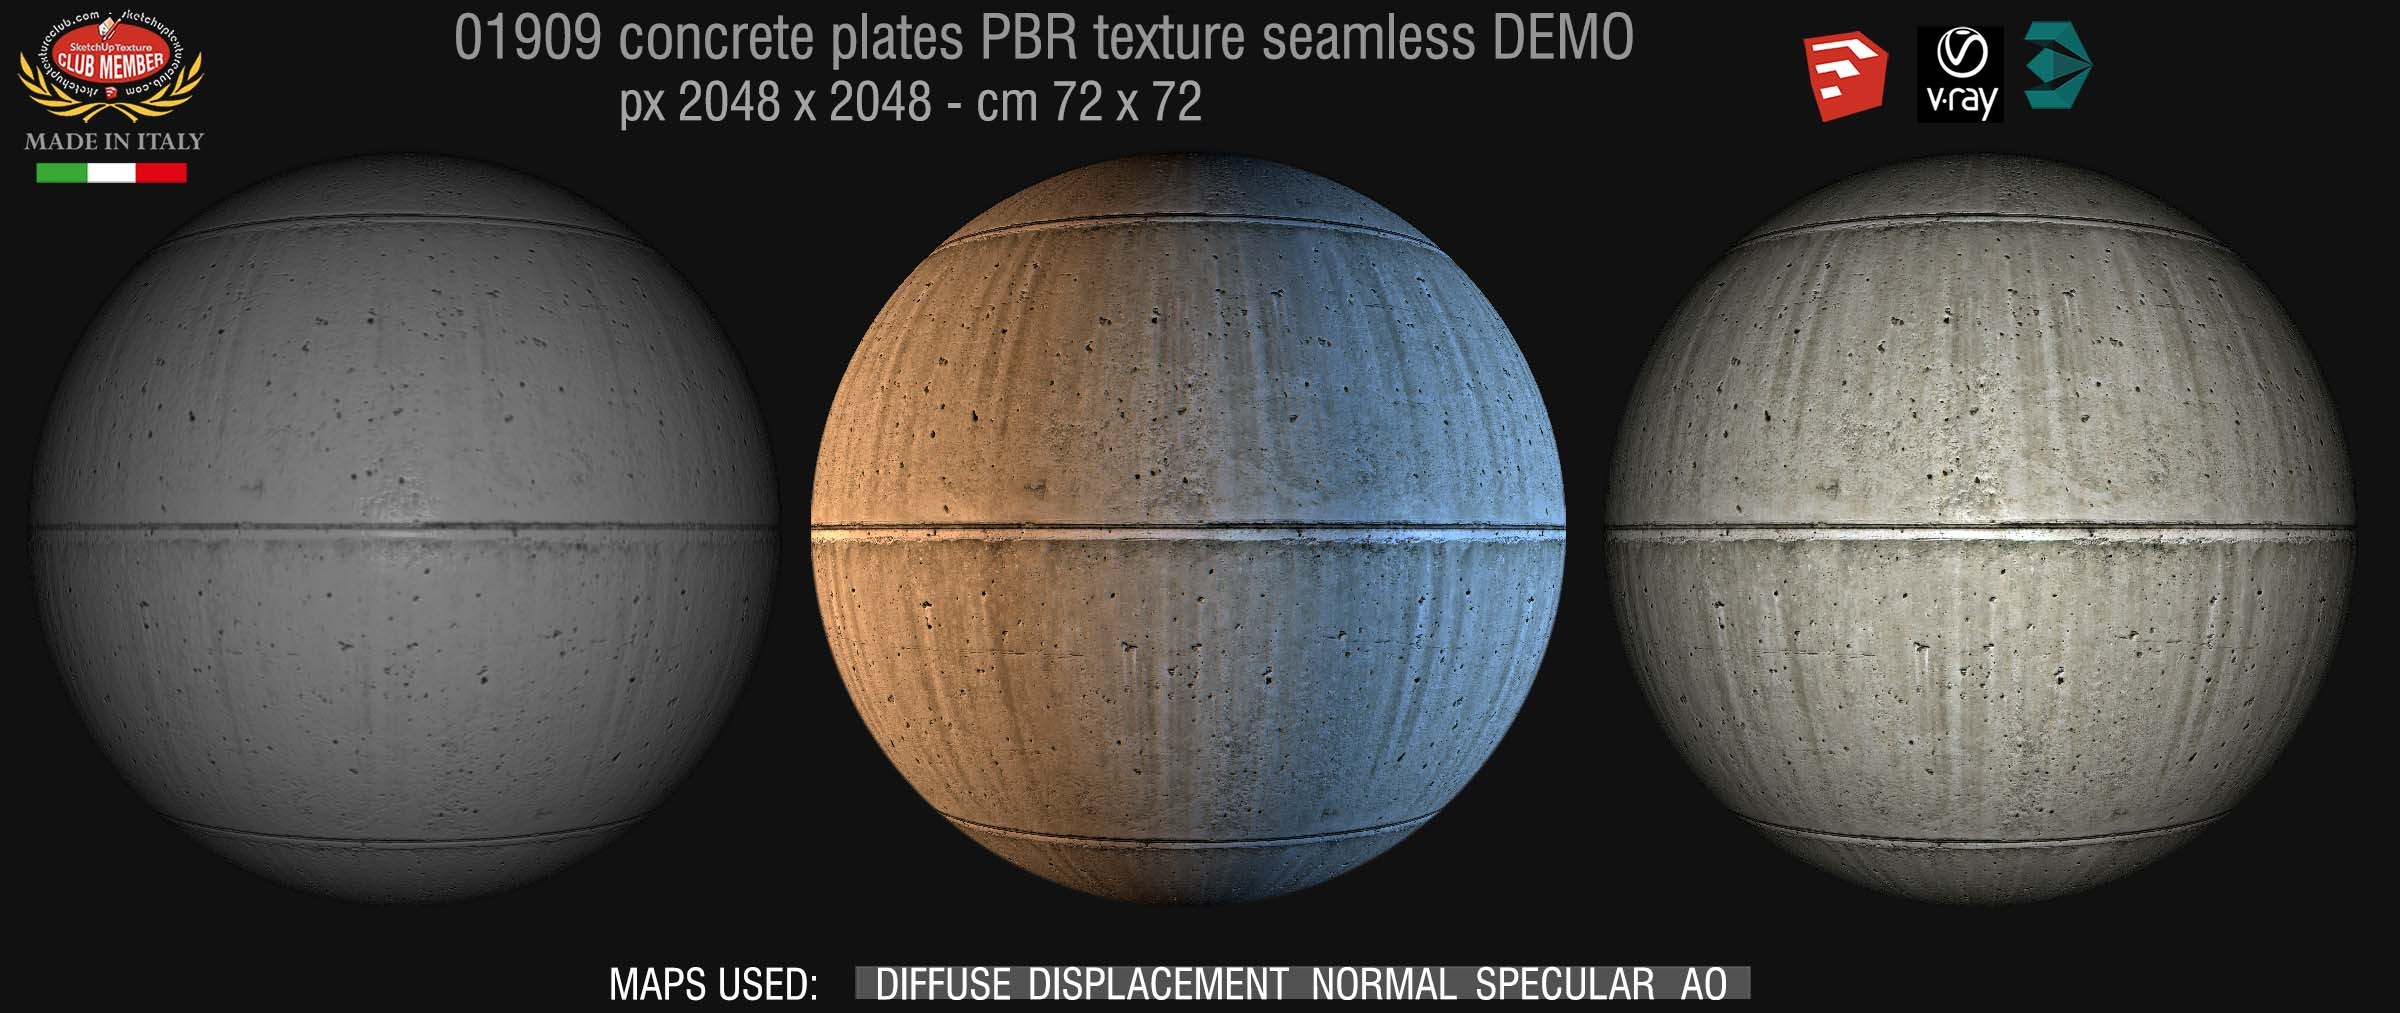 01909 Tadao ando concrete dirty plates PBR seamless texture DEMO